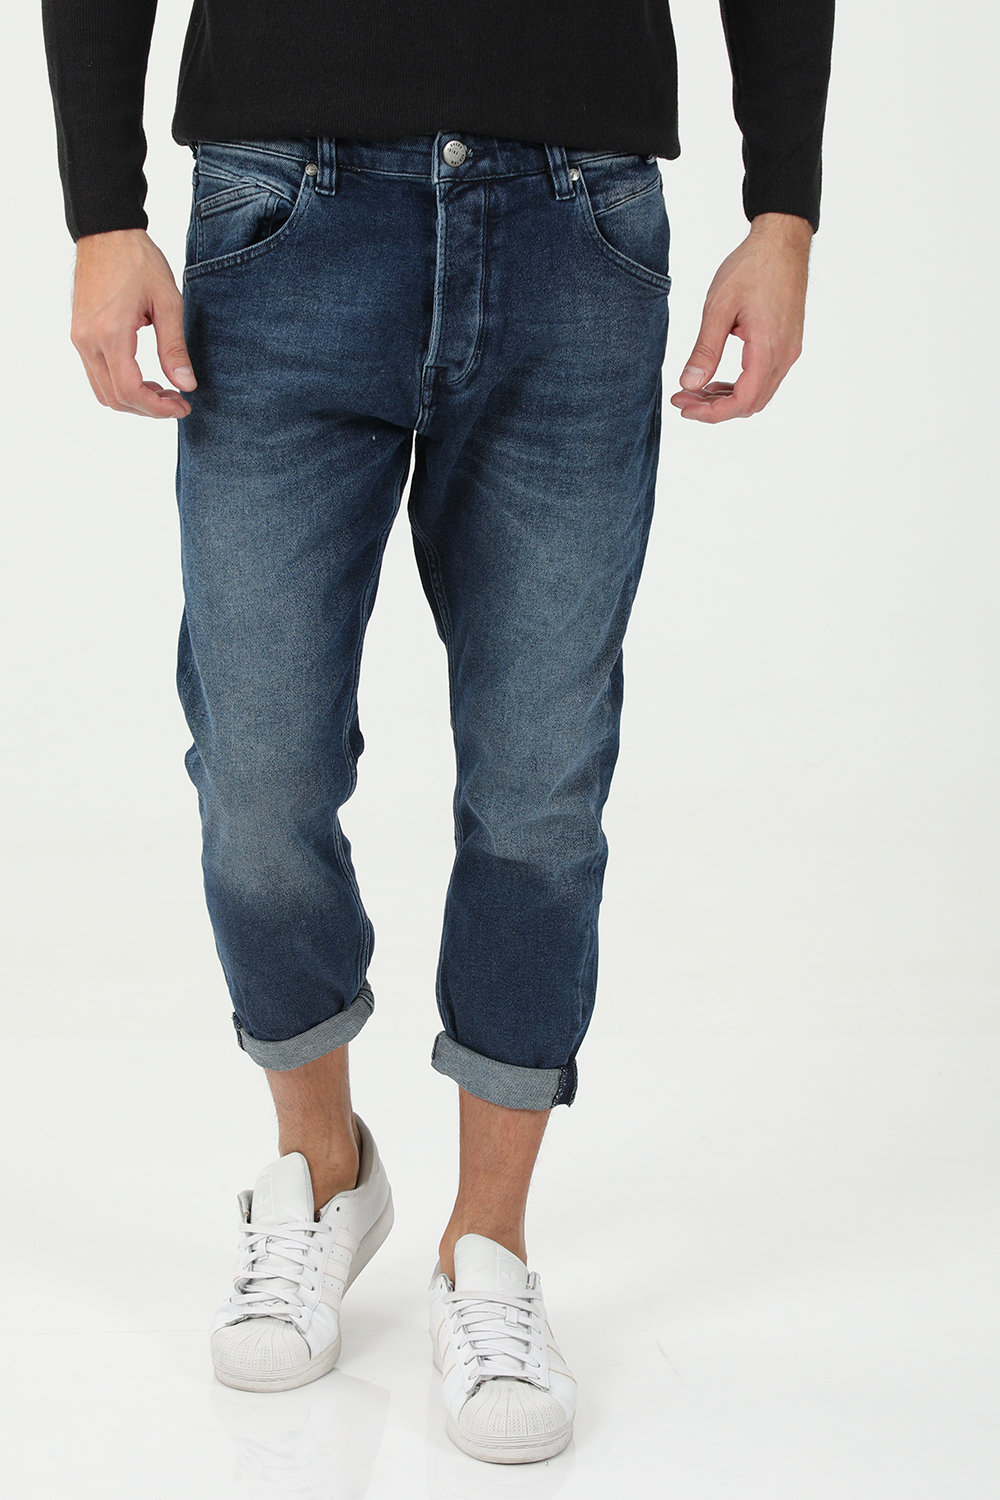 Ανδρικά/Ρούχα/Τζίν/Skinny GABBA - Ανδρικό jean παντελόνι GABBA Alex K3868 μπλε